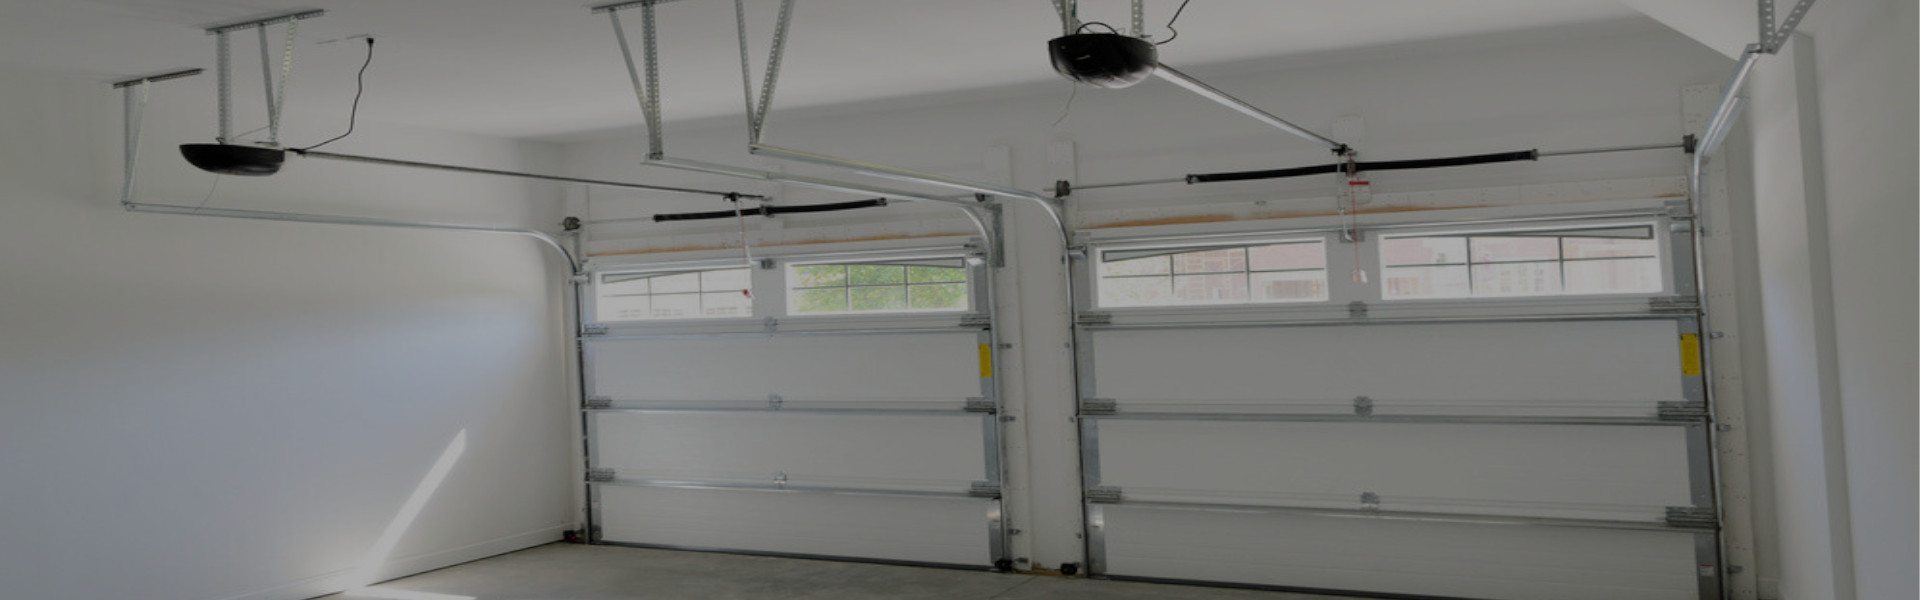 Slider Garage Door Repair, Glaziers in Elephant & Castle, SE17